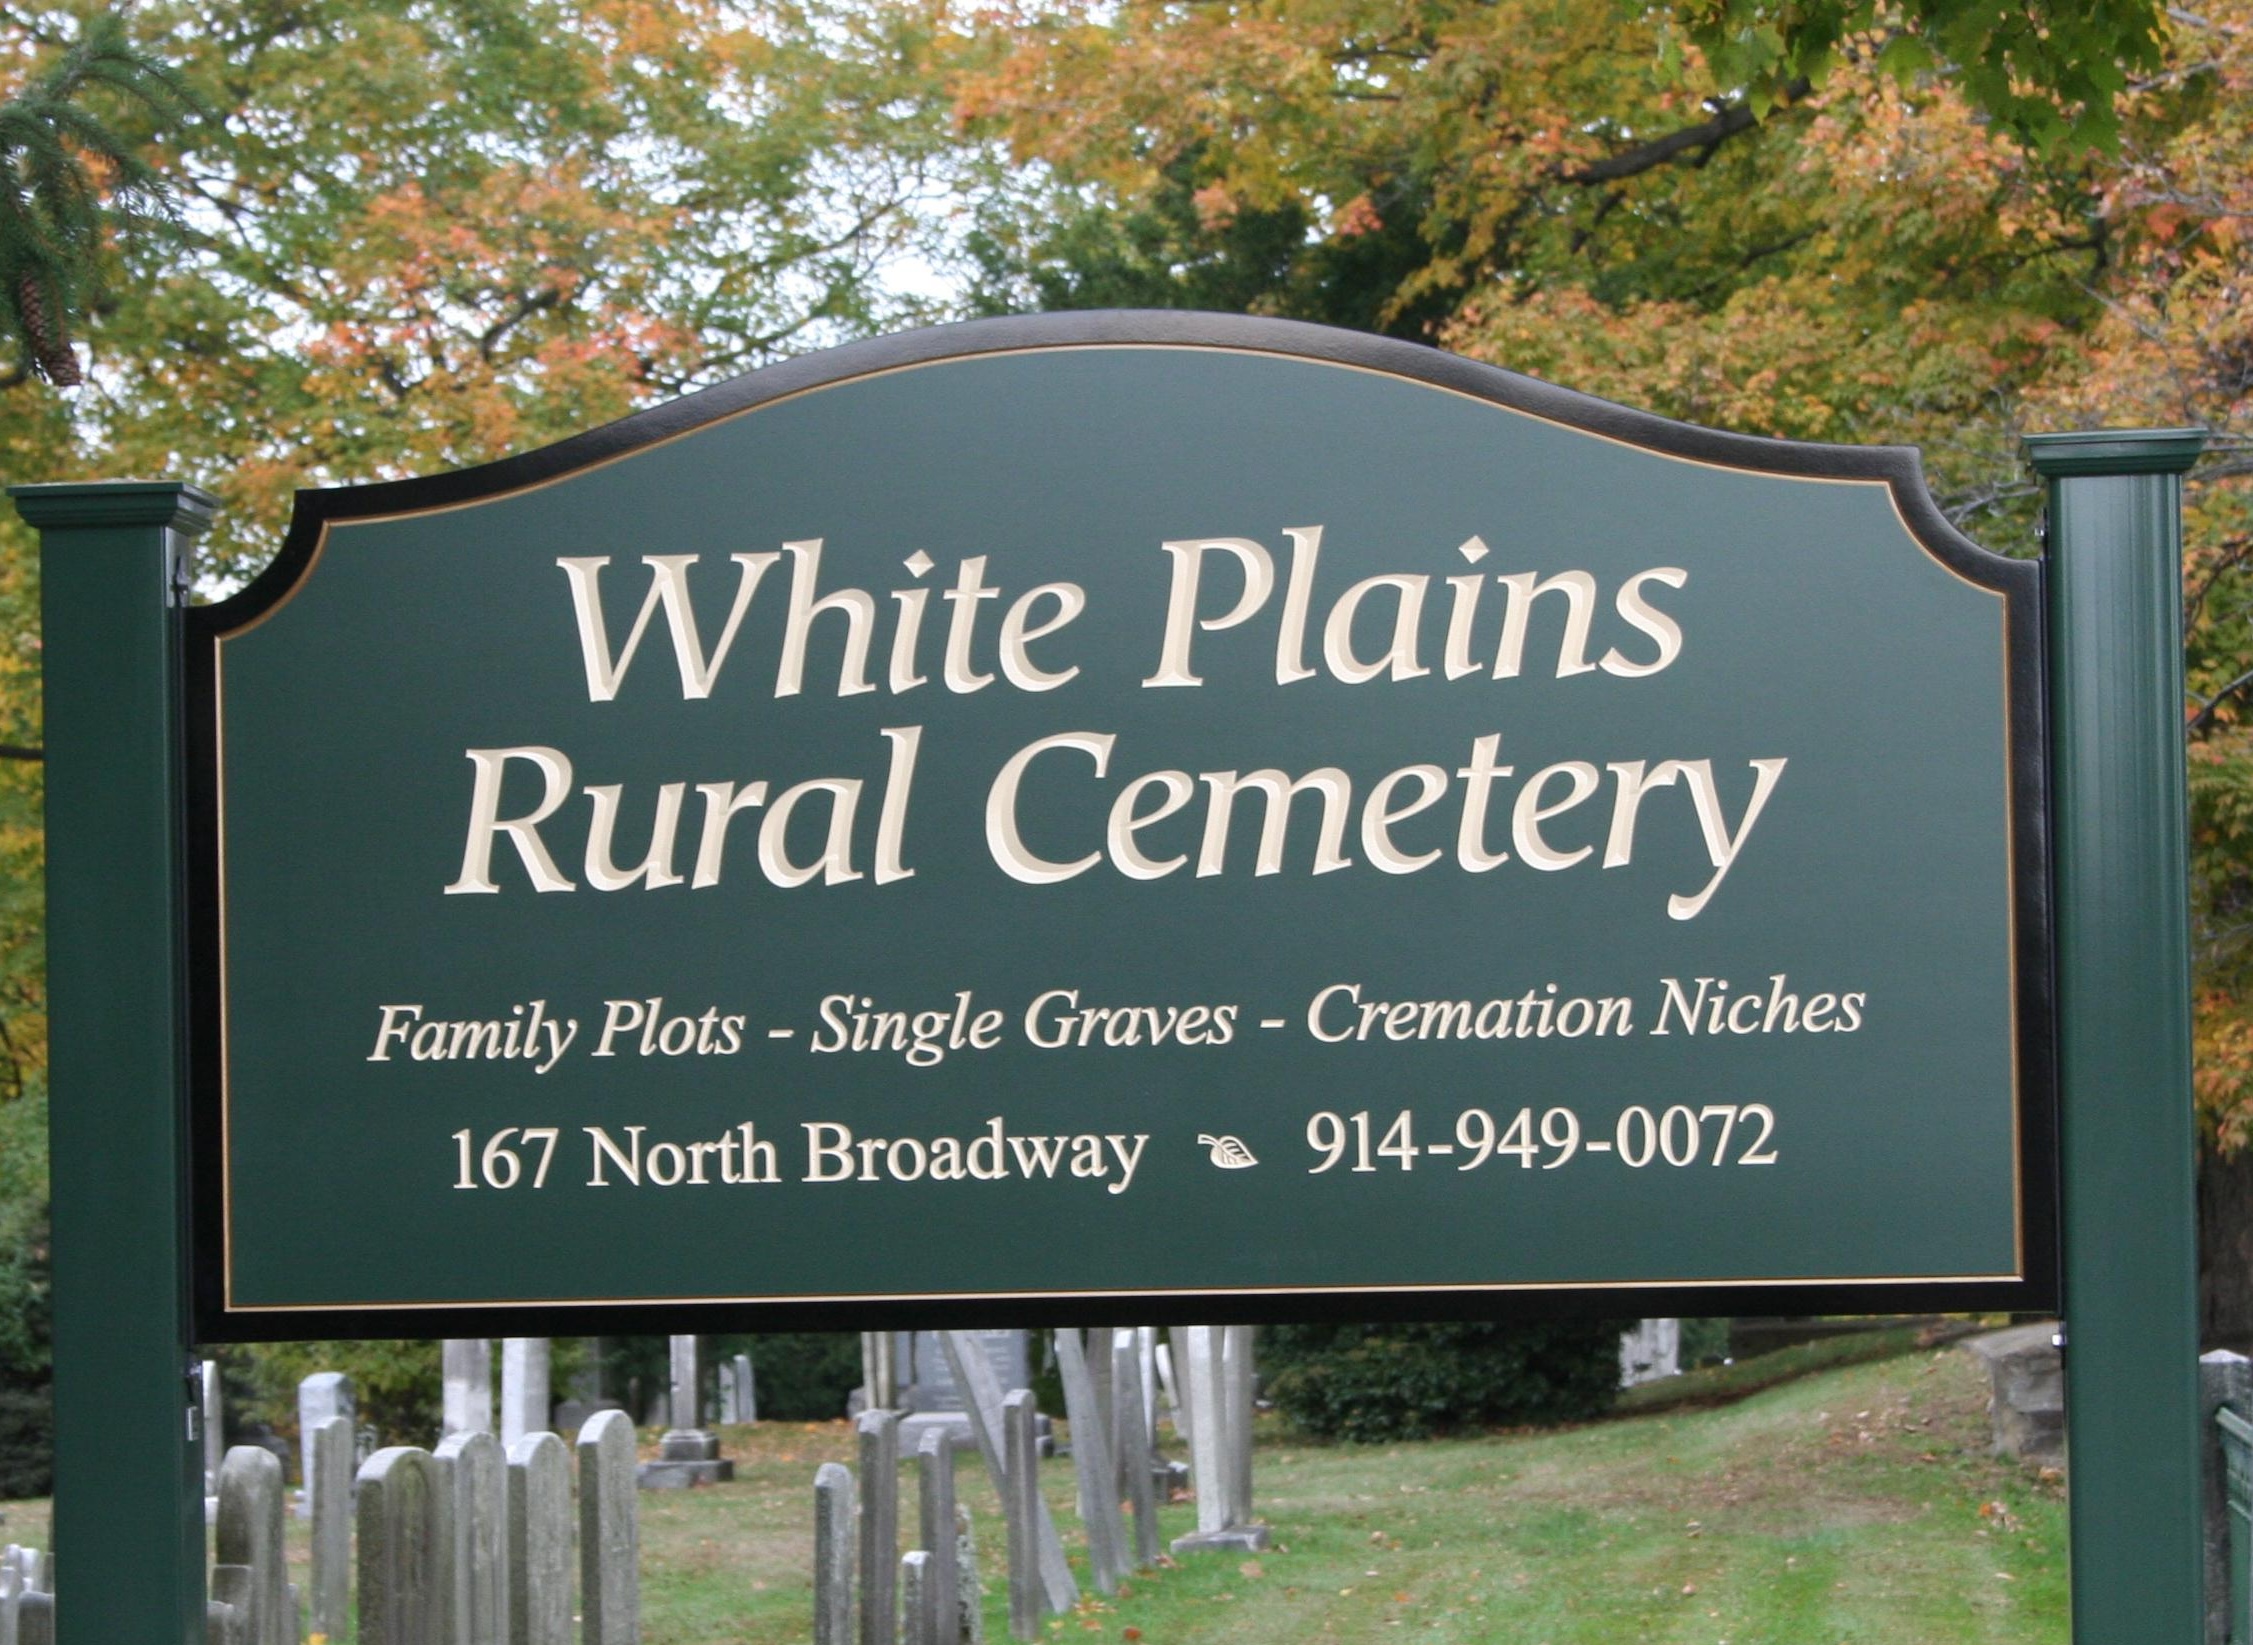 White Plains Rural Cemetery